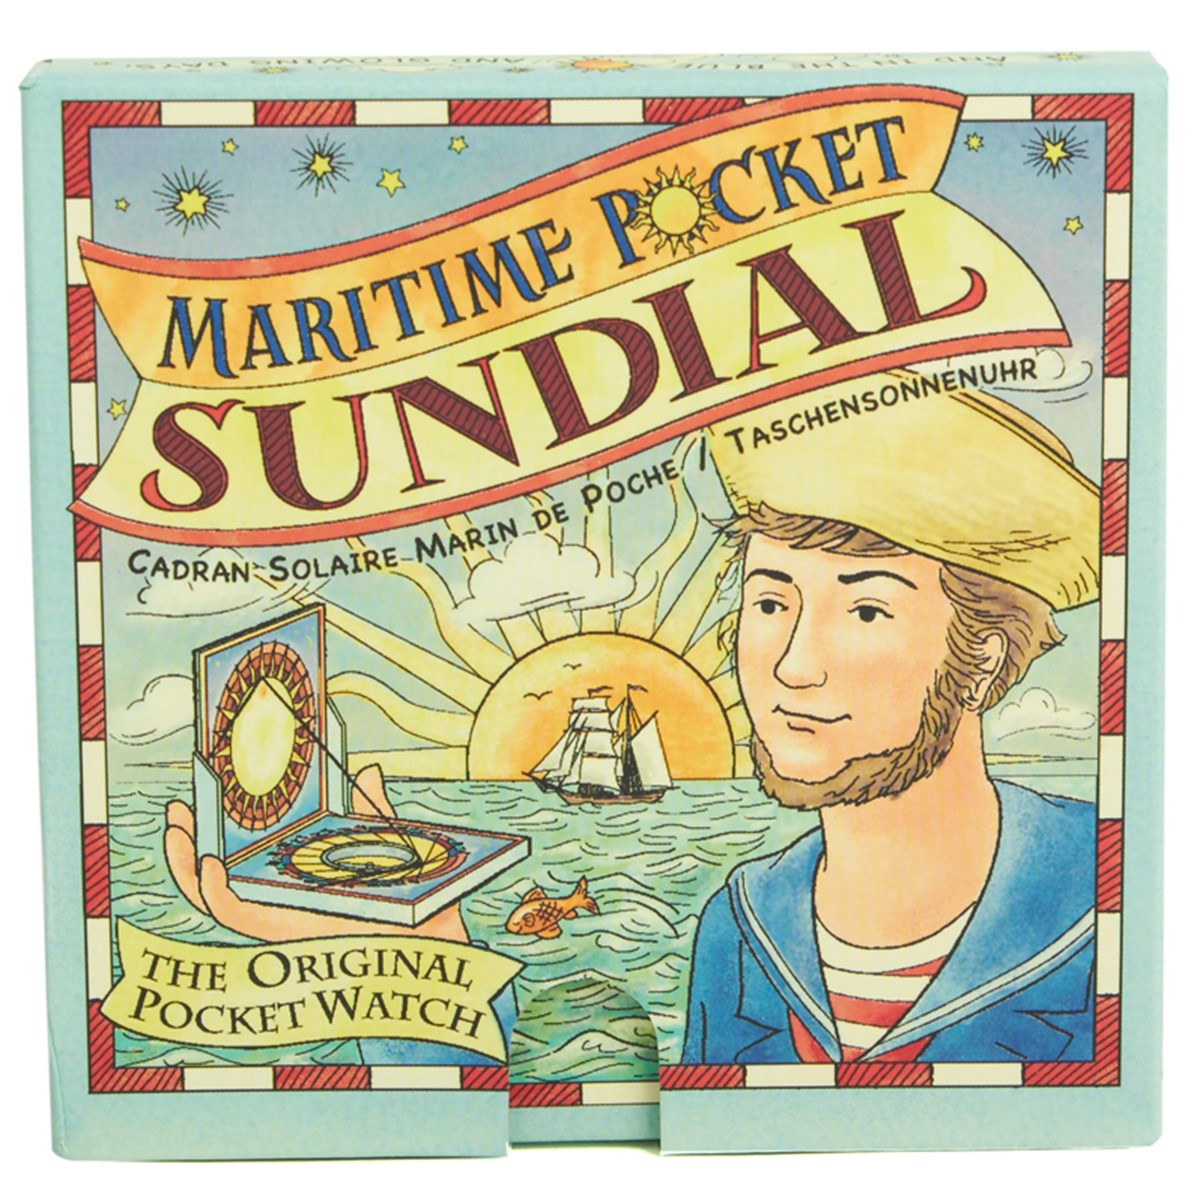 Maritime Pocket Sundial